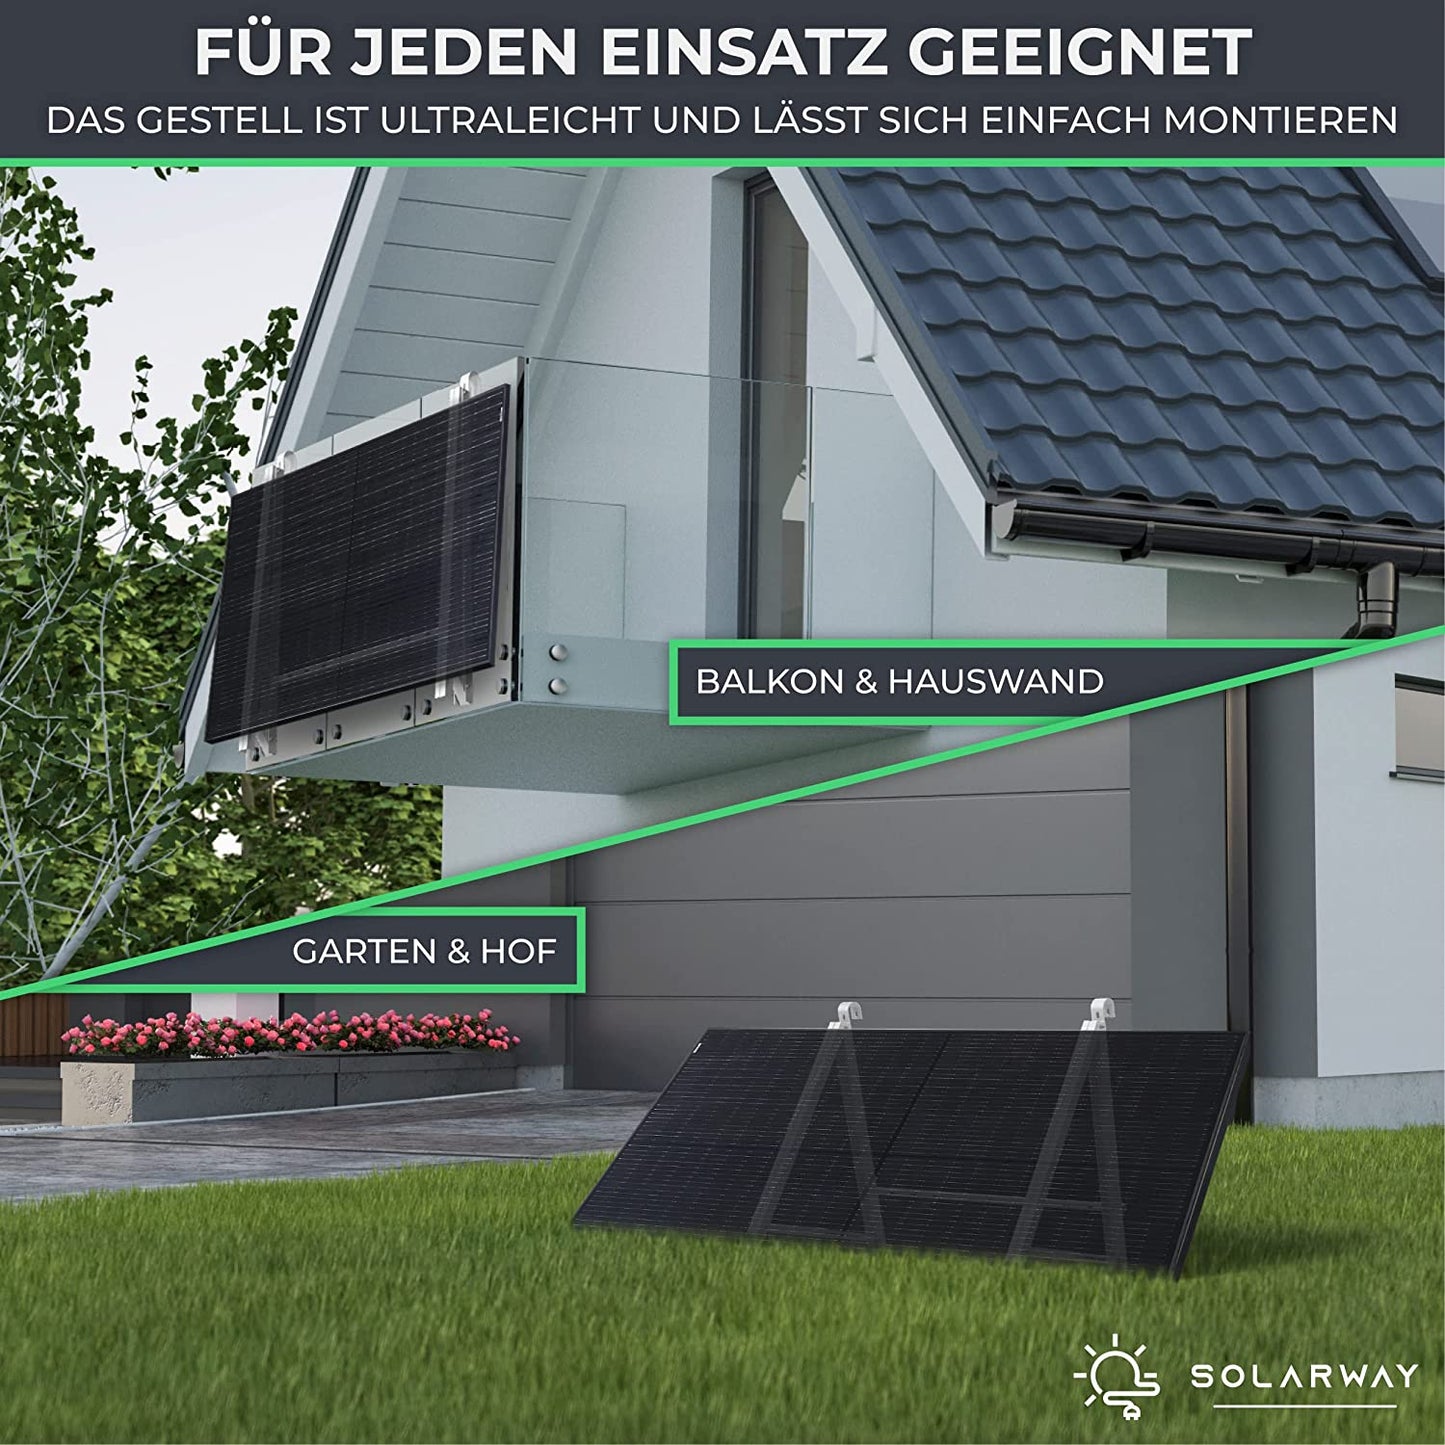 Montagepaket Balkonkraftwerk Halterung für 1 Modul | Balkon, Flachdach/Boden oder Wand | geeignet für alle gängigen Solarmodule